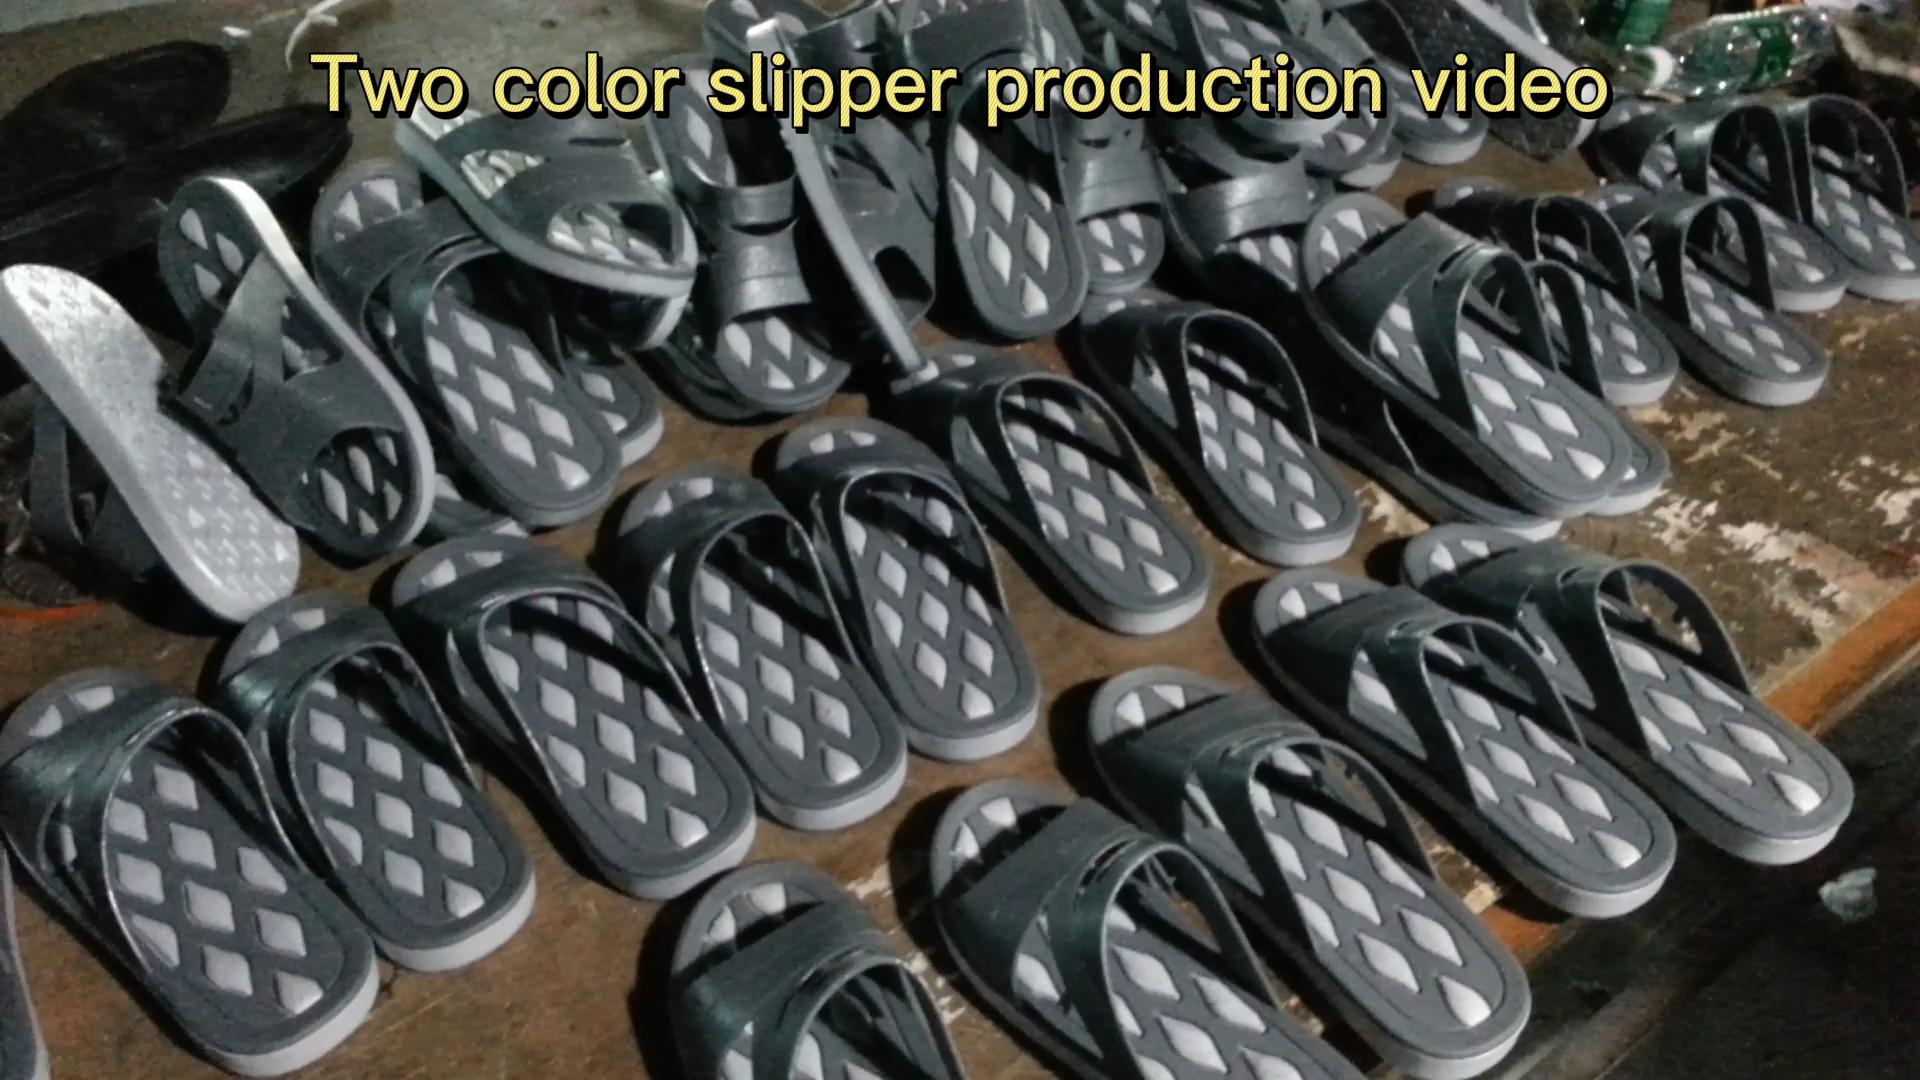 दो रंग का जूता उत्पादन वीडियो